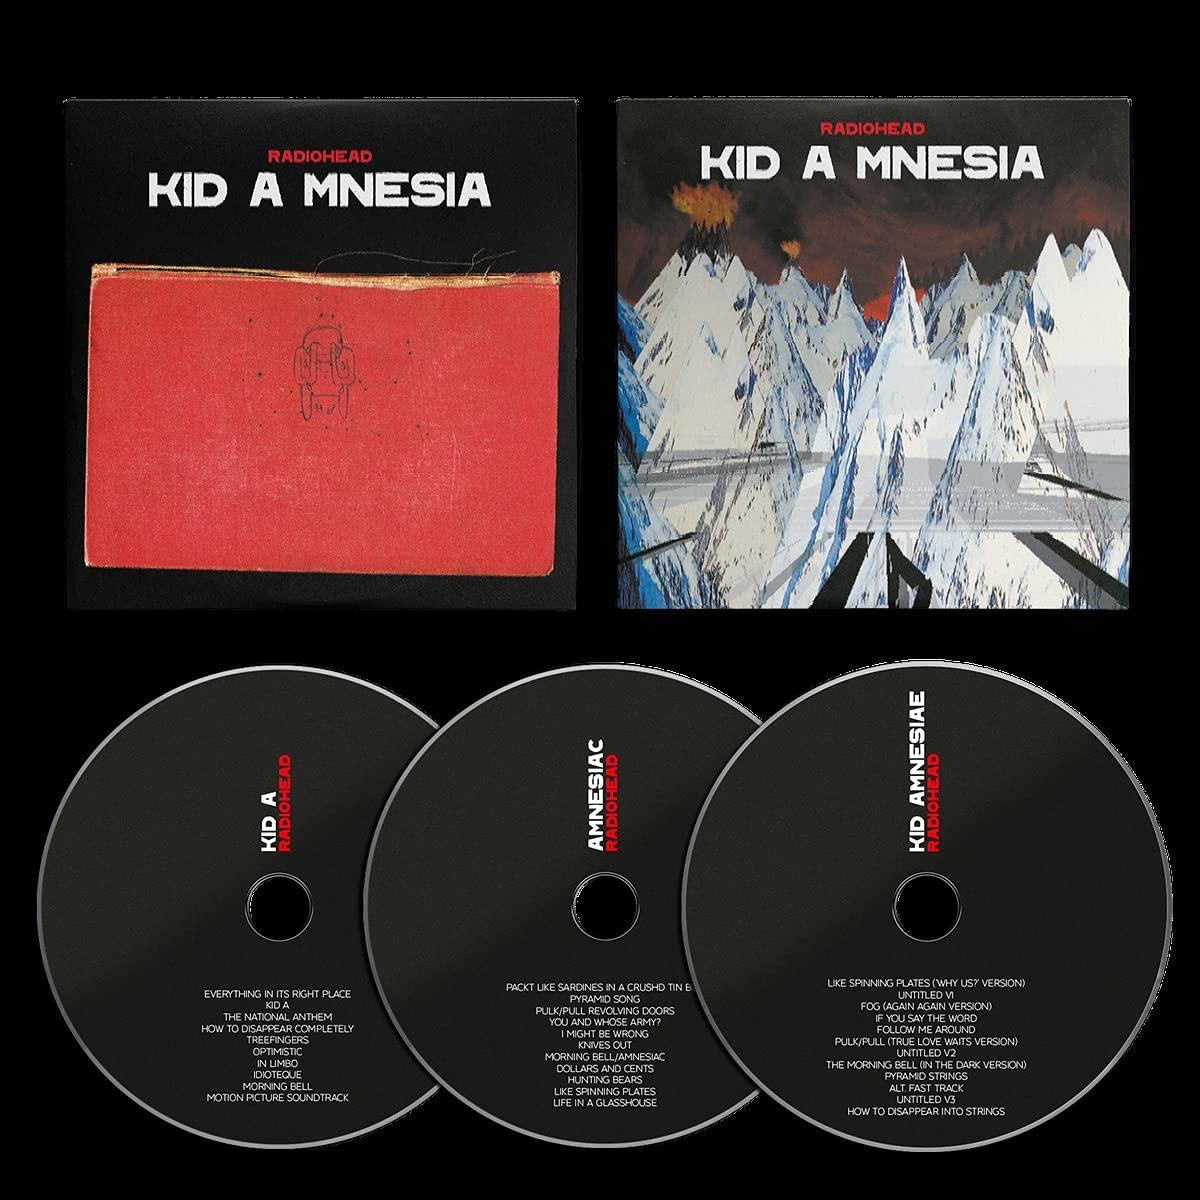 Radiohead - (CD) Cd) Kid (3 - Mnesia A